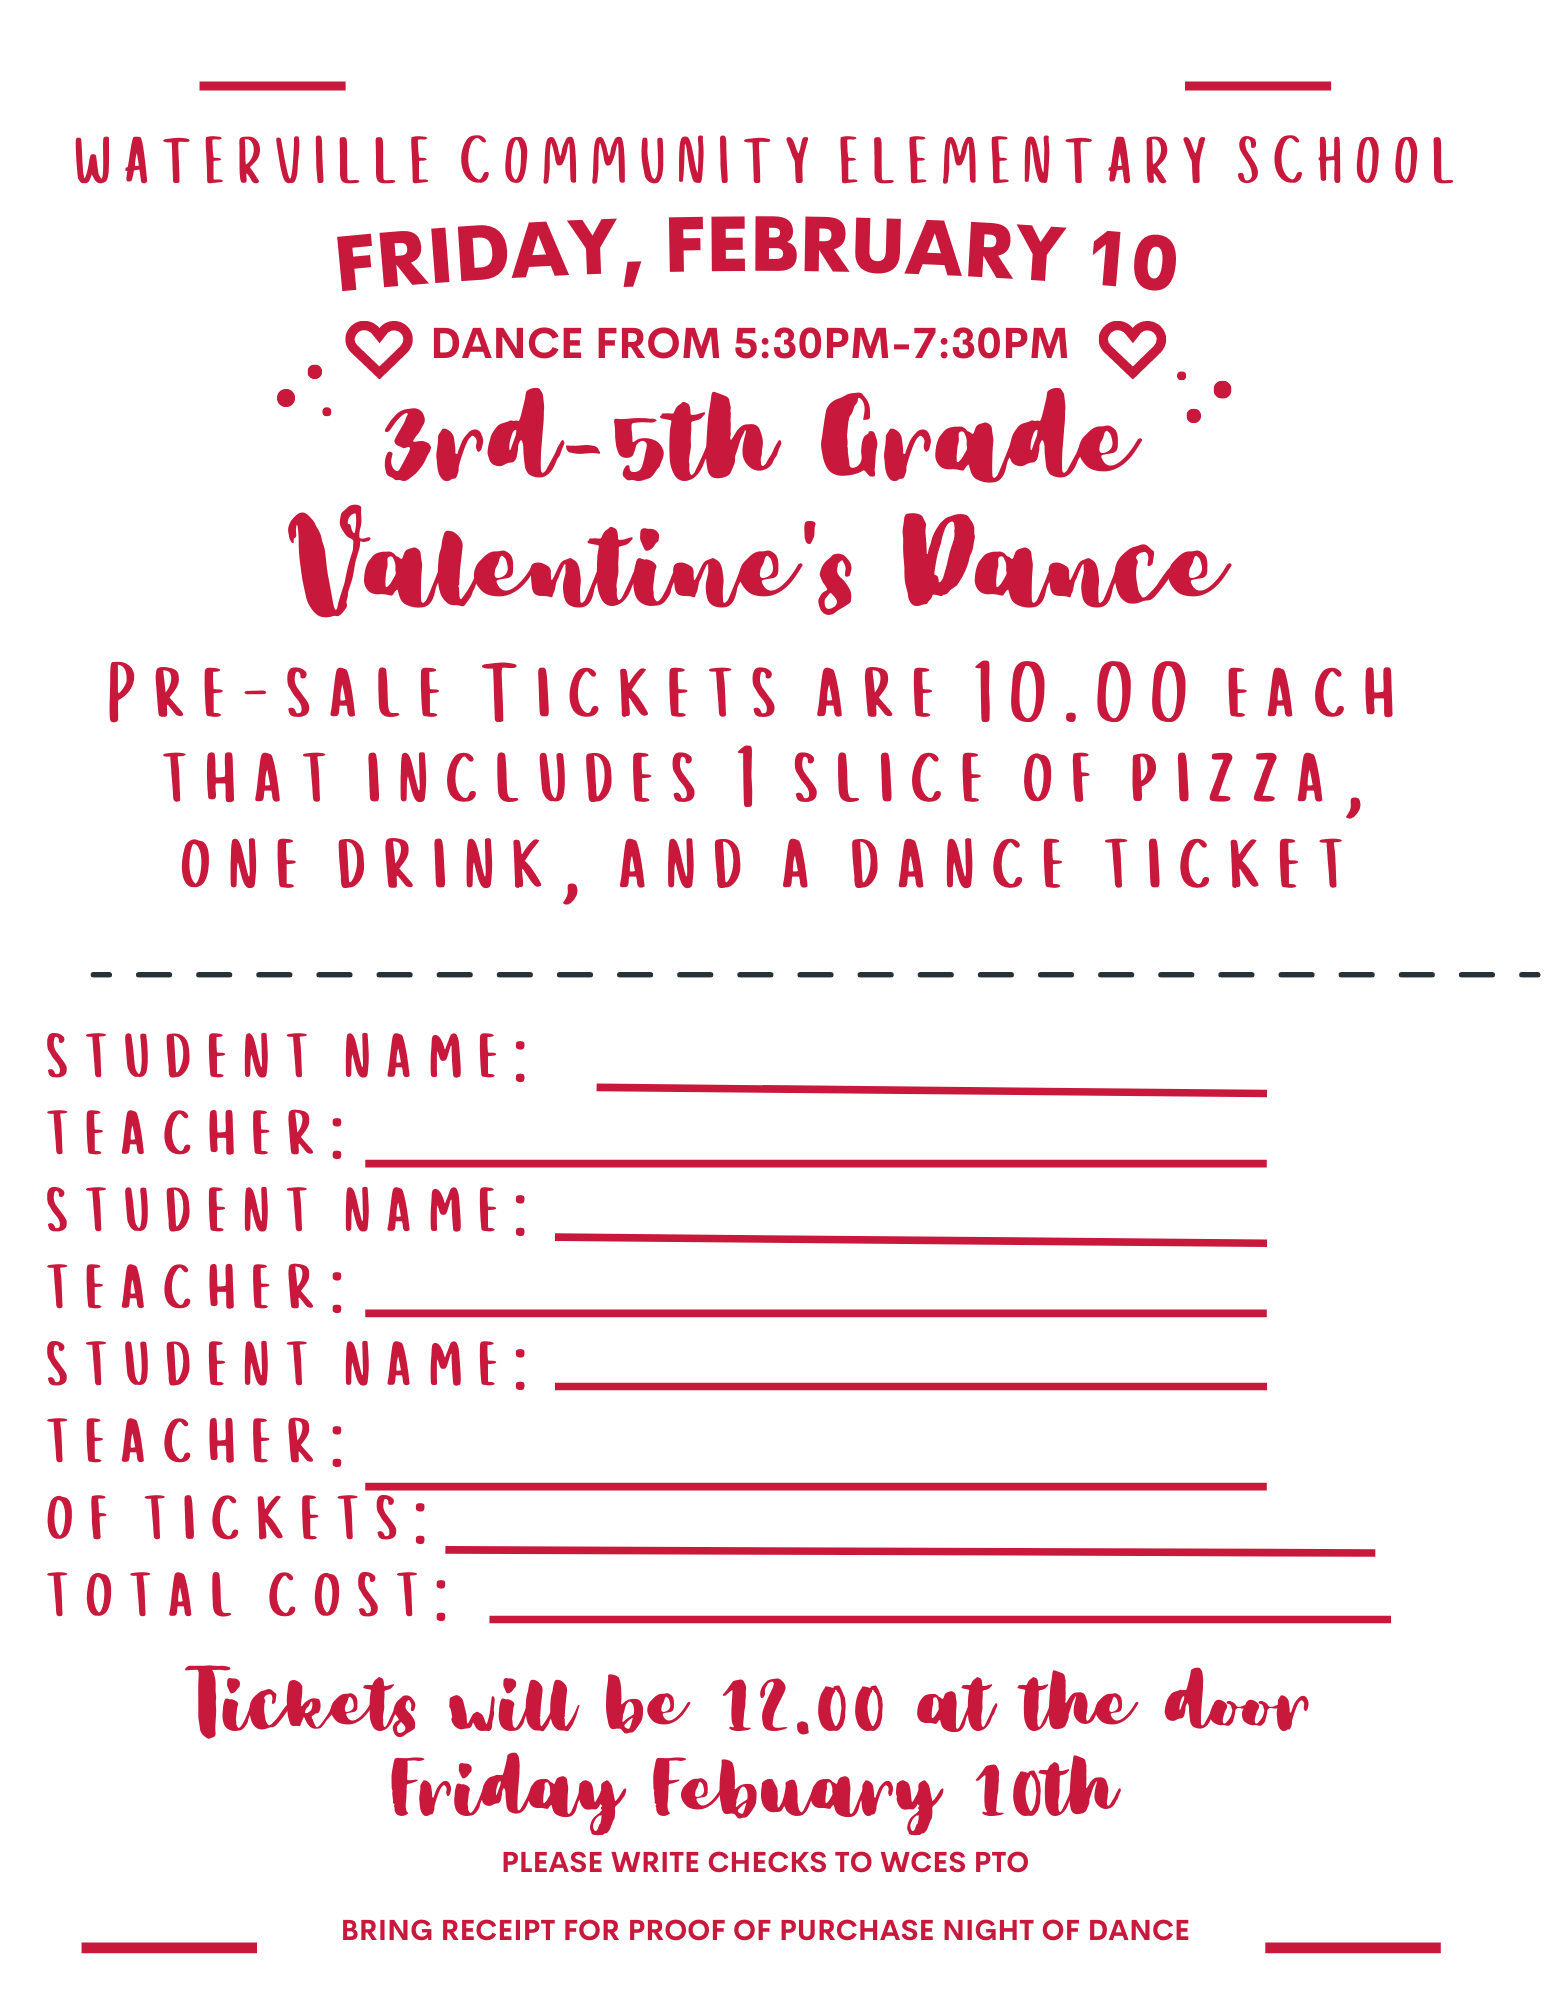 Registration form for Valentine's Dance